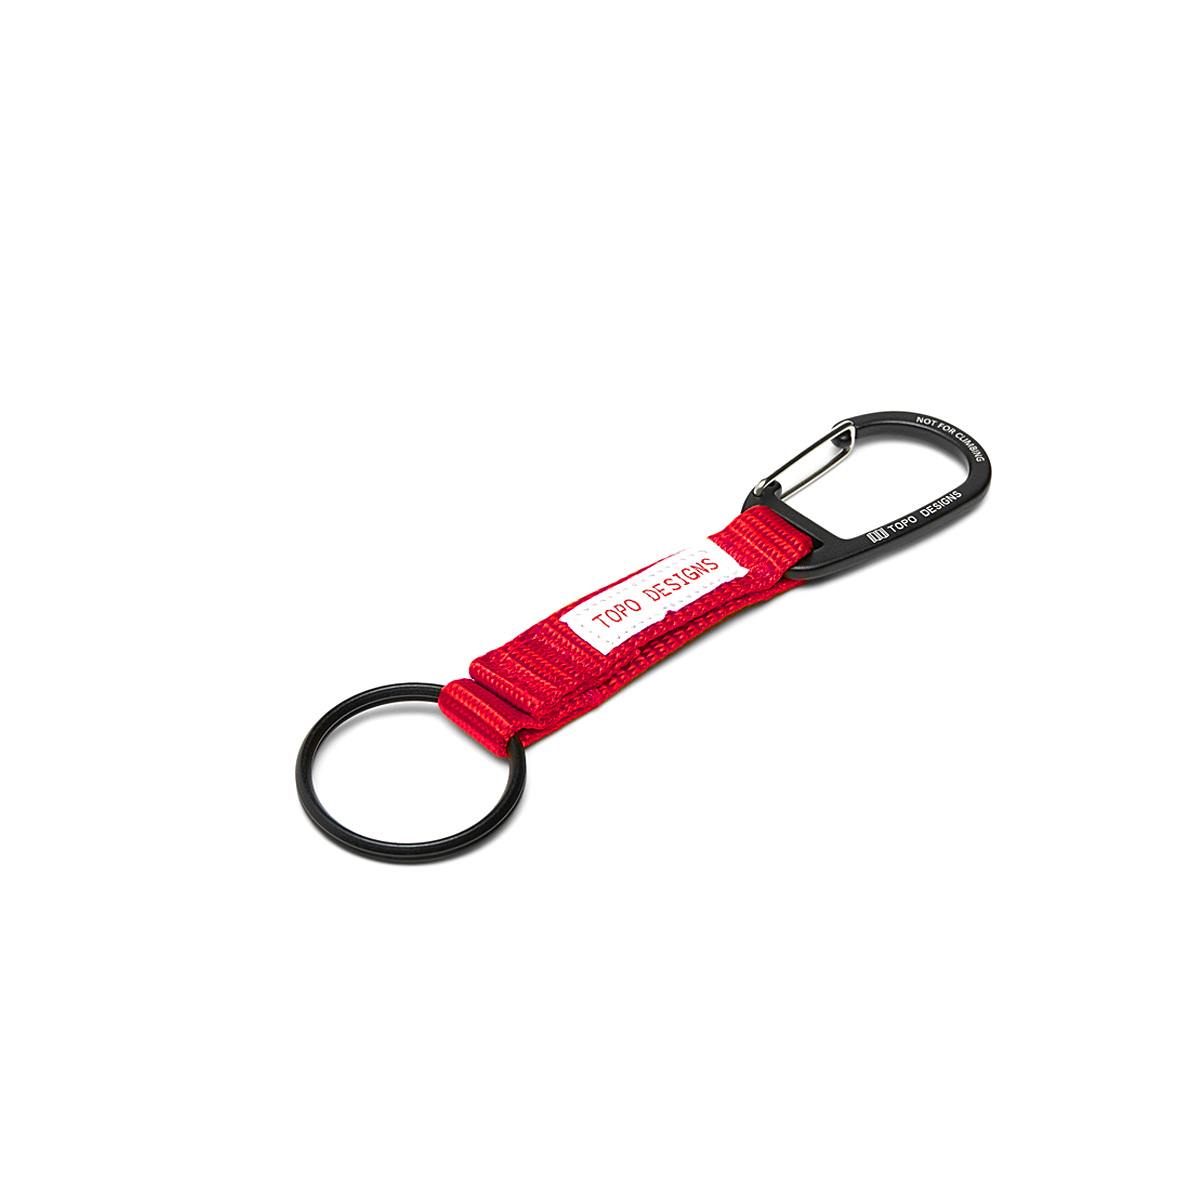 Topo Designs Key Clip Red, houd sleutels bij de hand en zichtbaar met de Key Clip